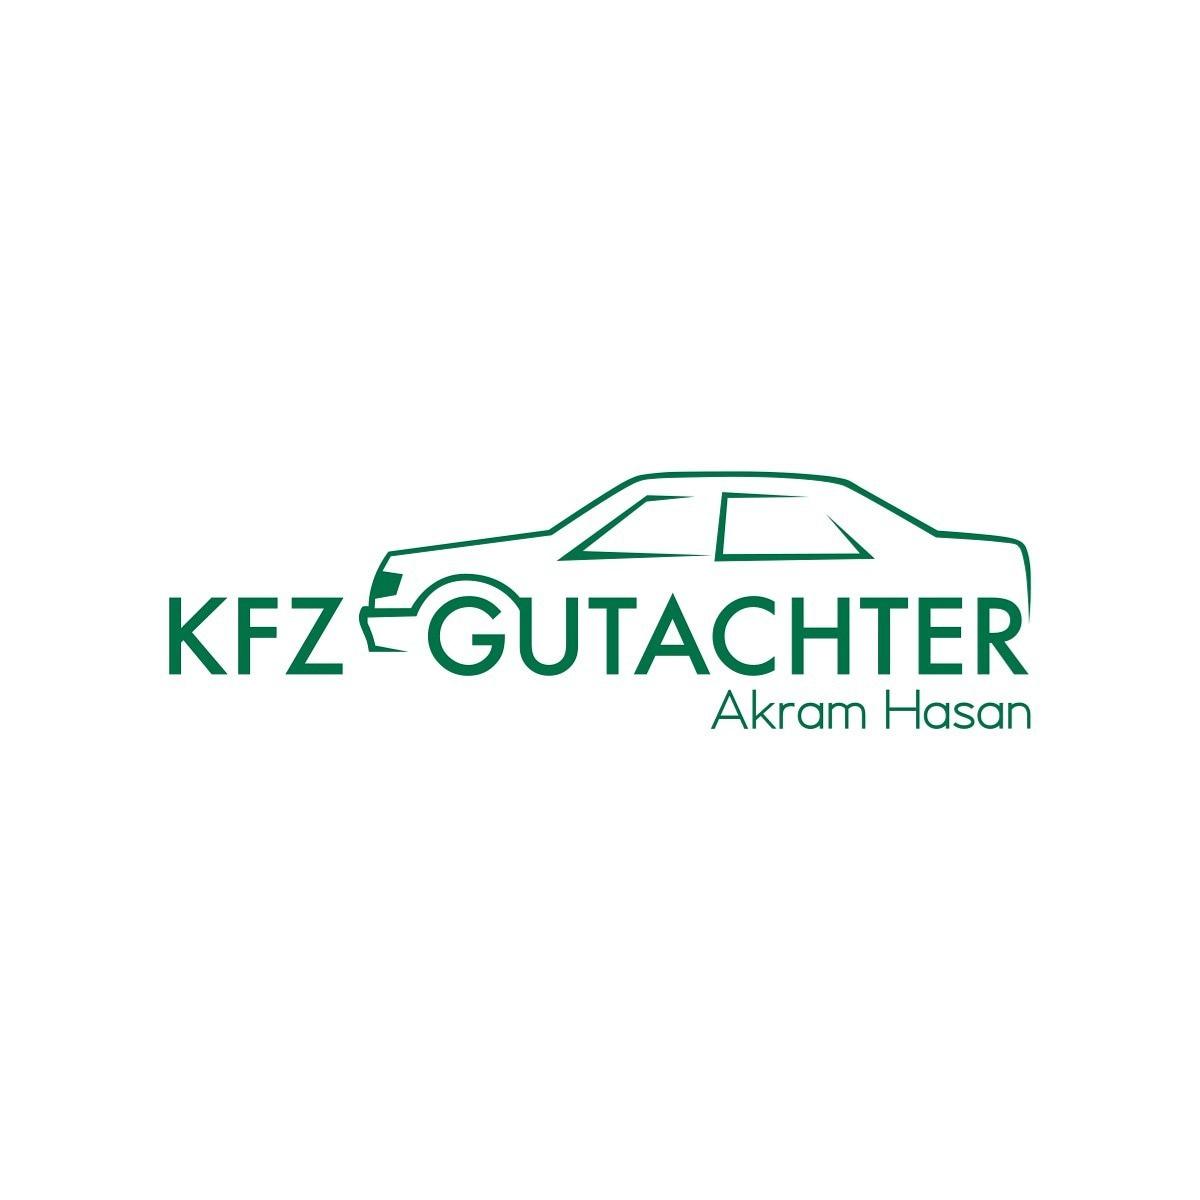 Kfz-Gutachter Akram Hasan Logo